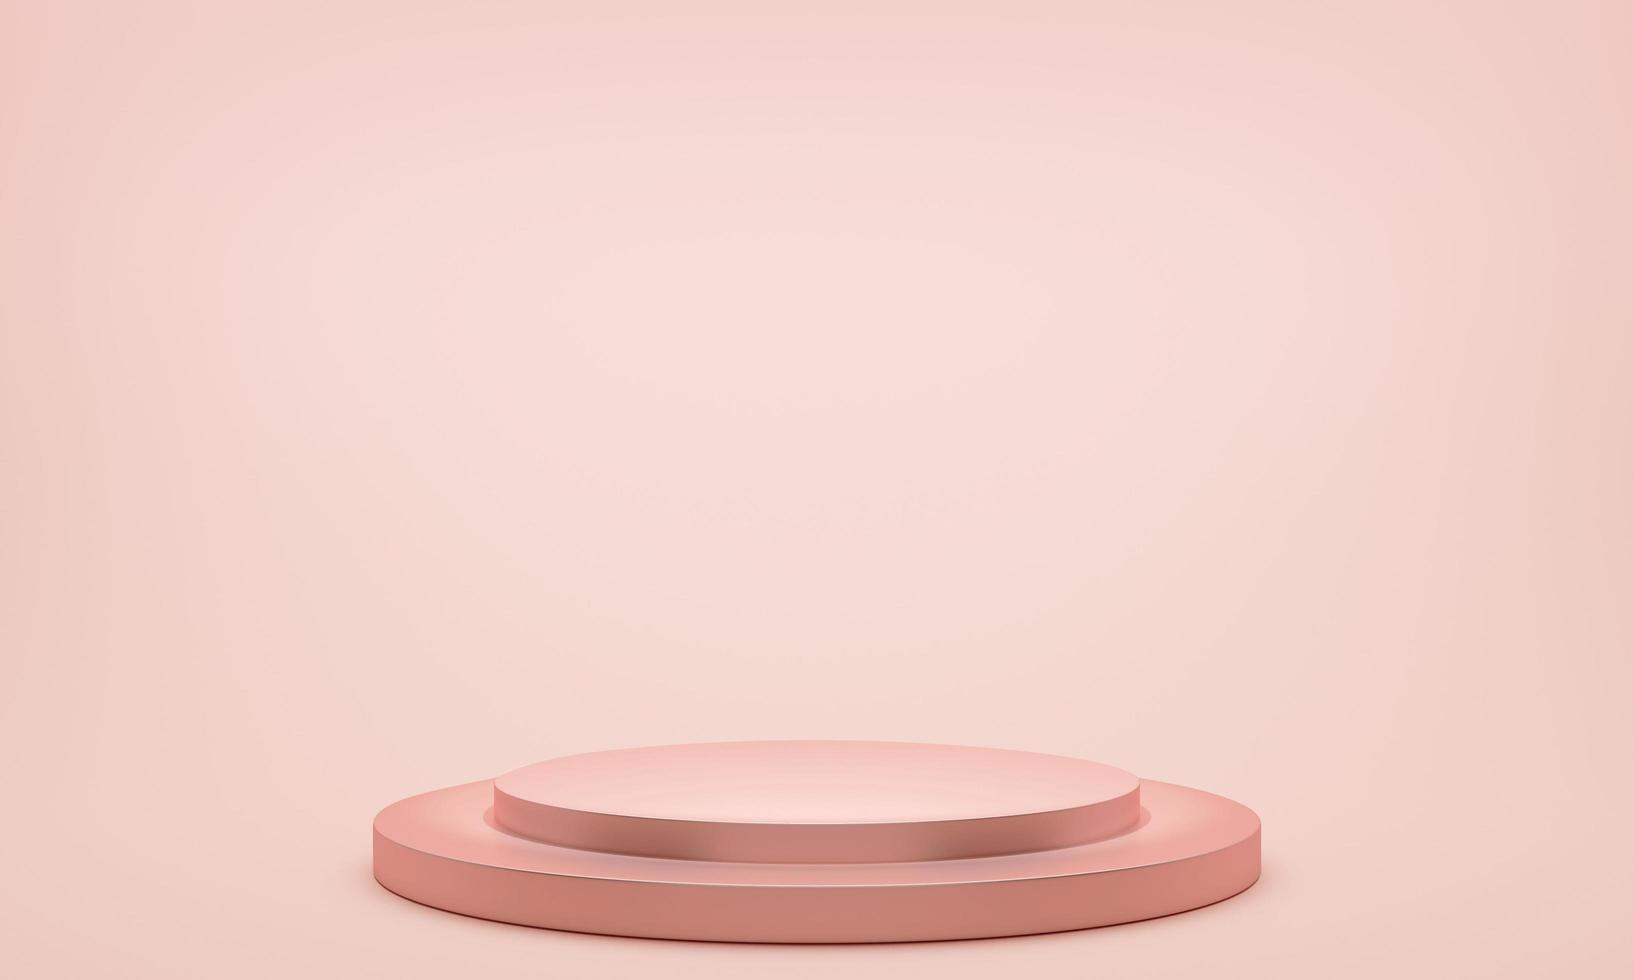 Minimales Schaufensterpodest des 3D-Renderings auf einem rosa Hintergrund. foto